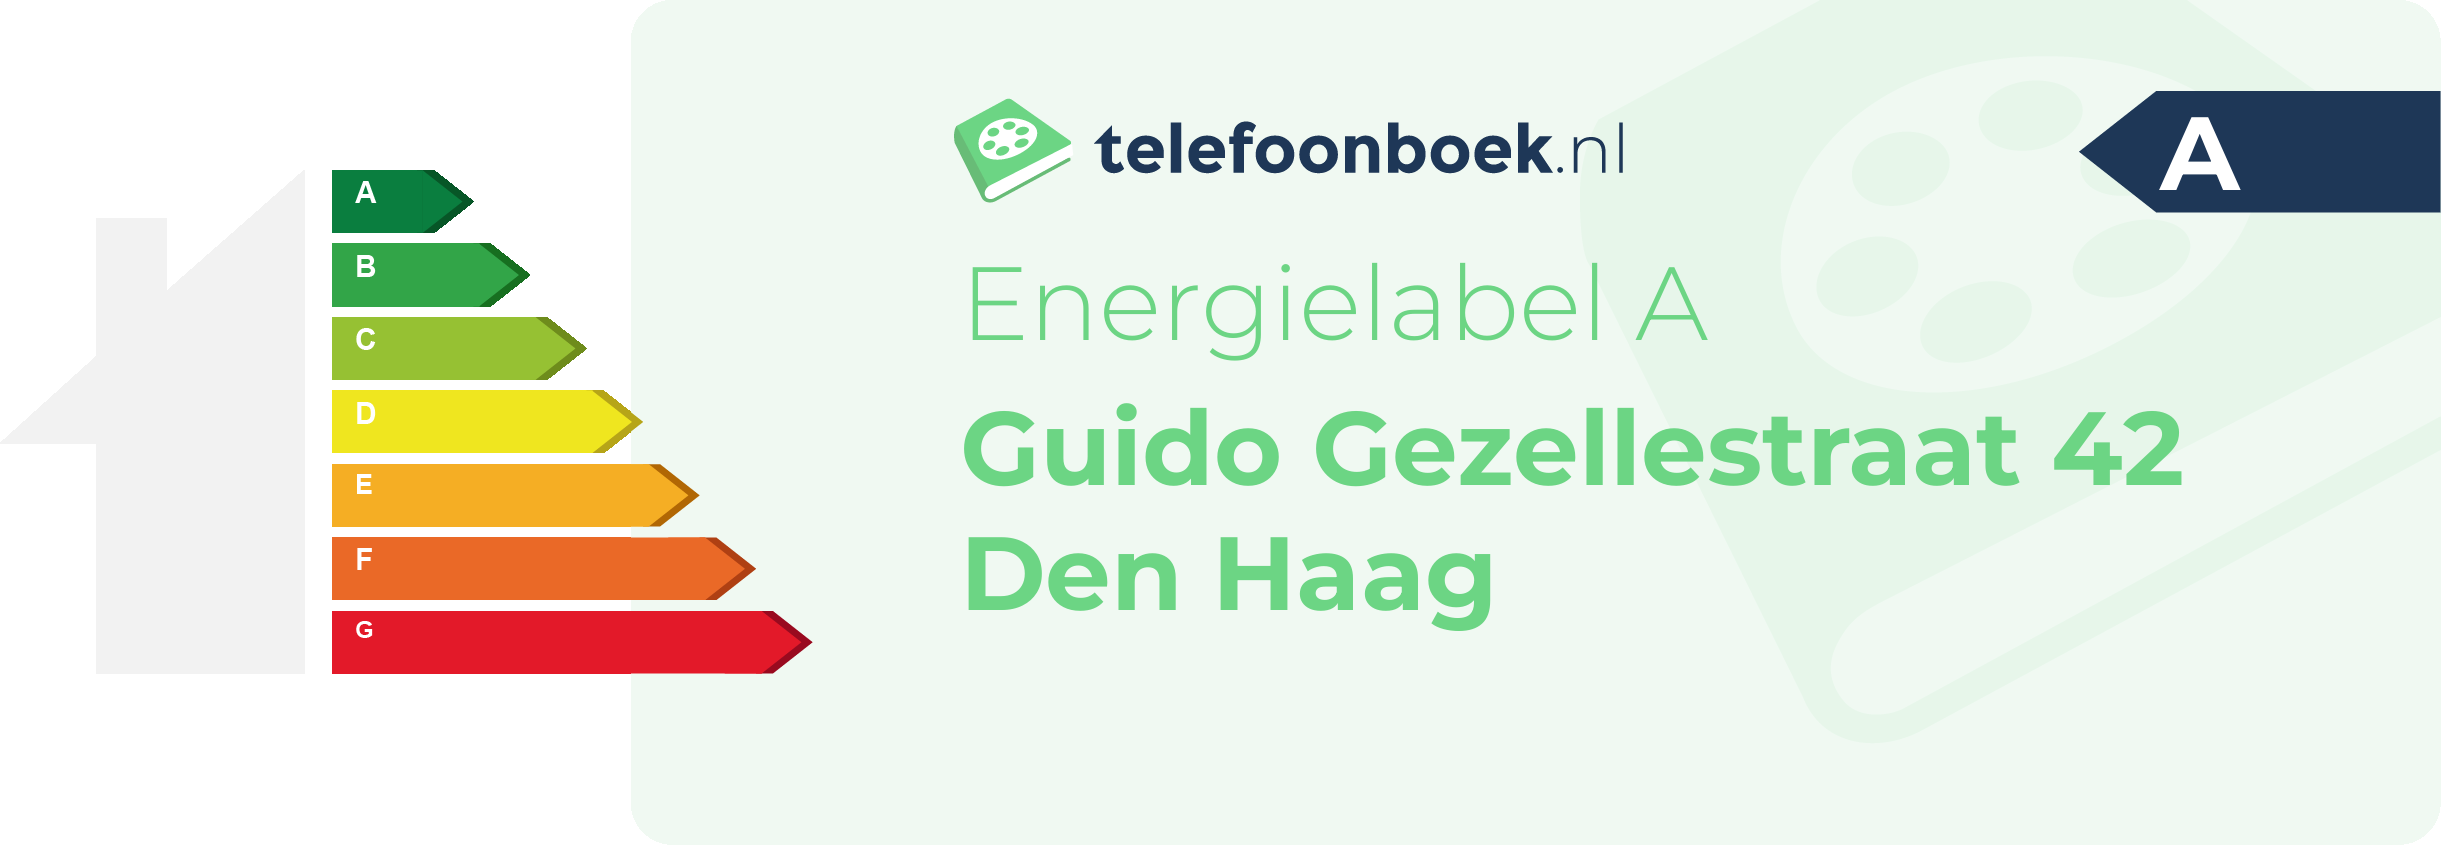 Energielabel Guido Gezellestraat 42 Den Haag